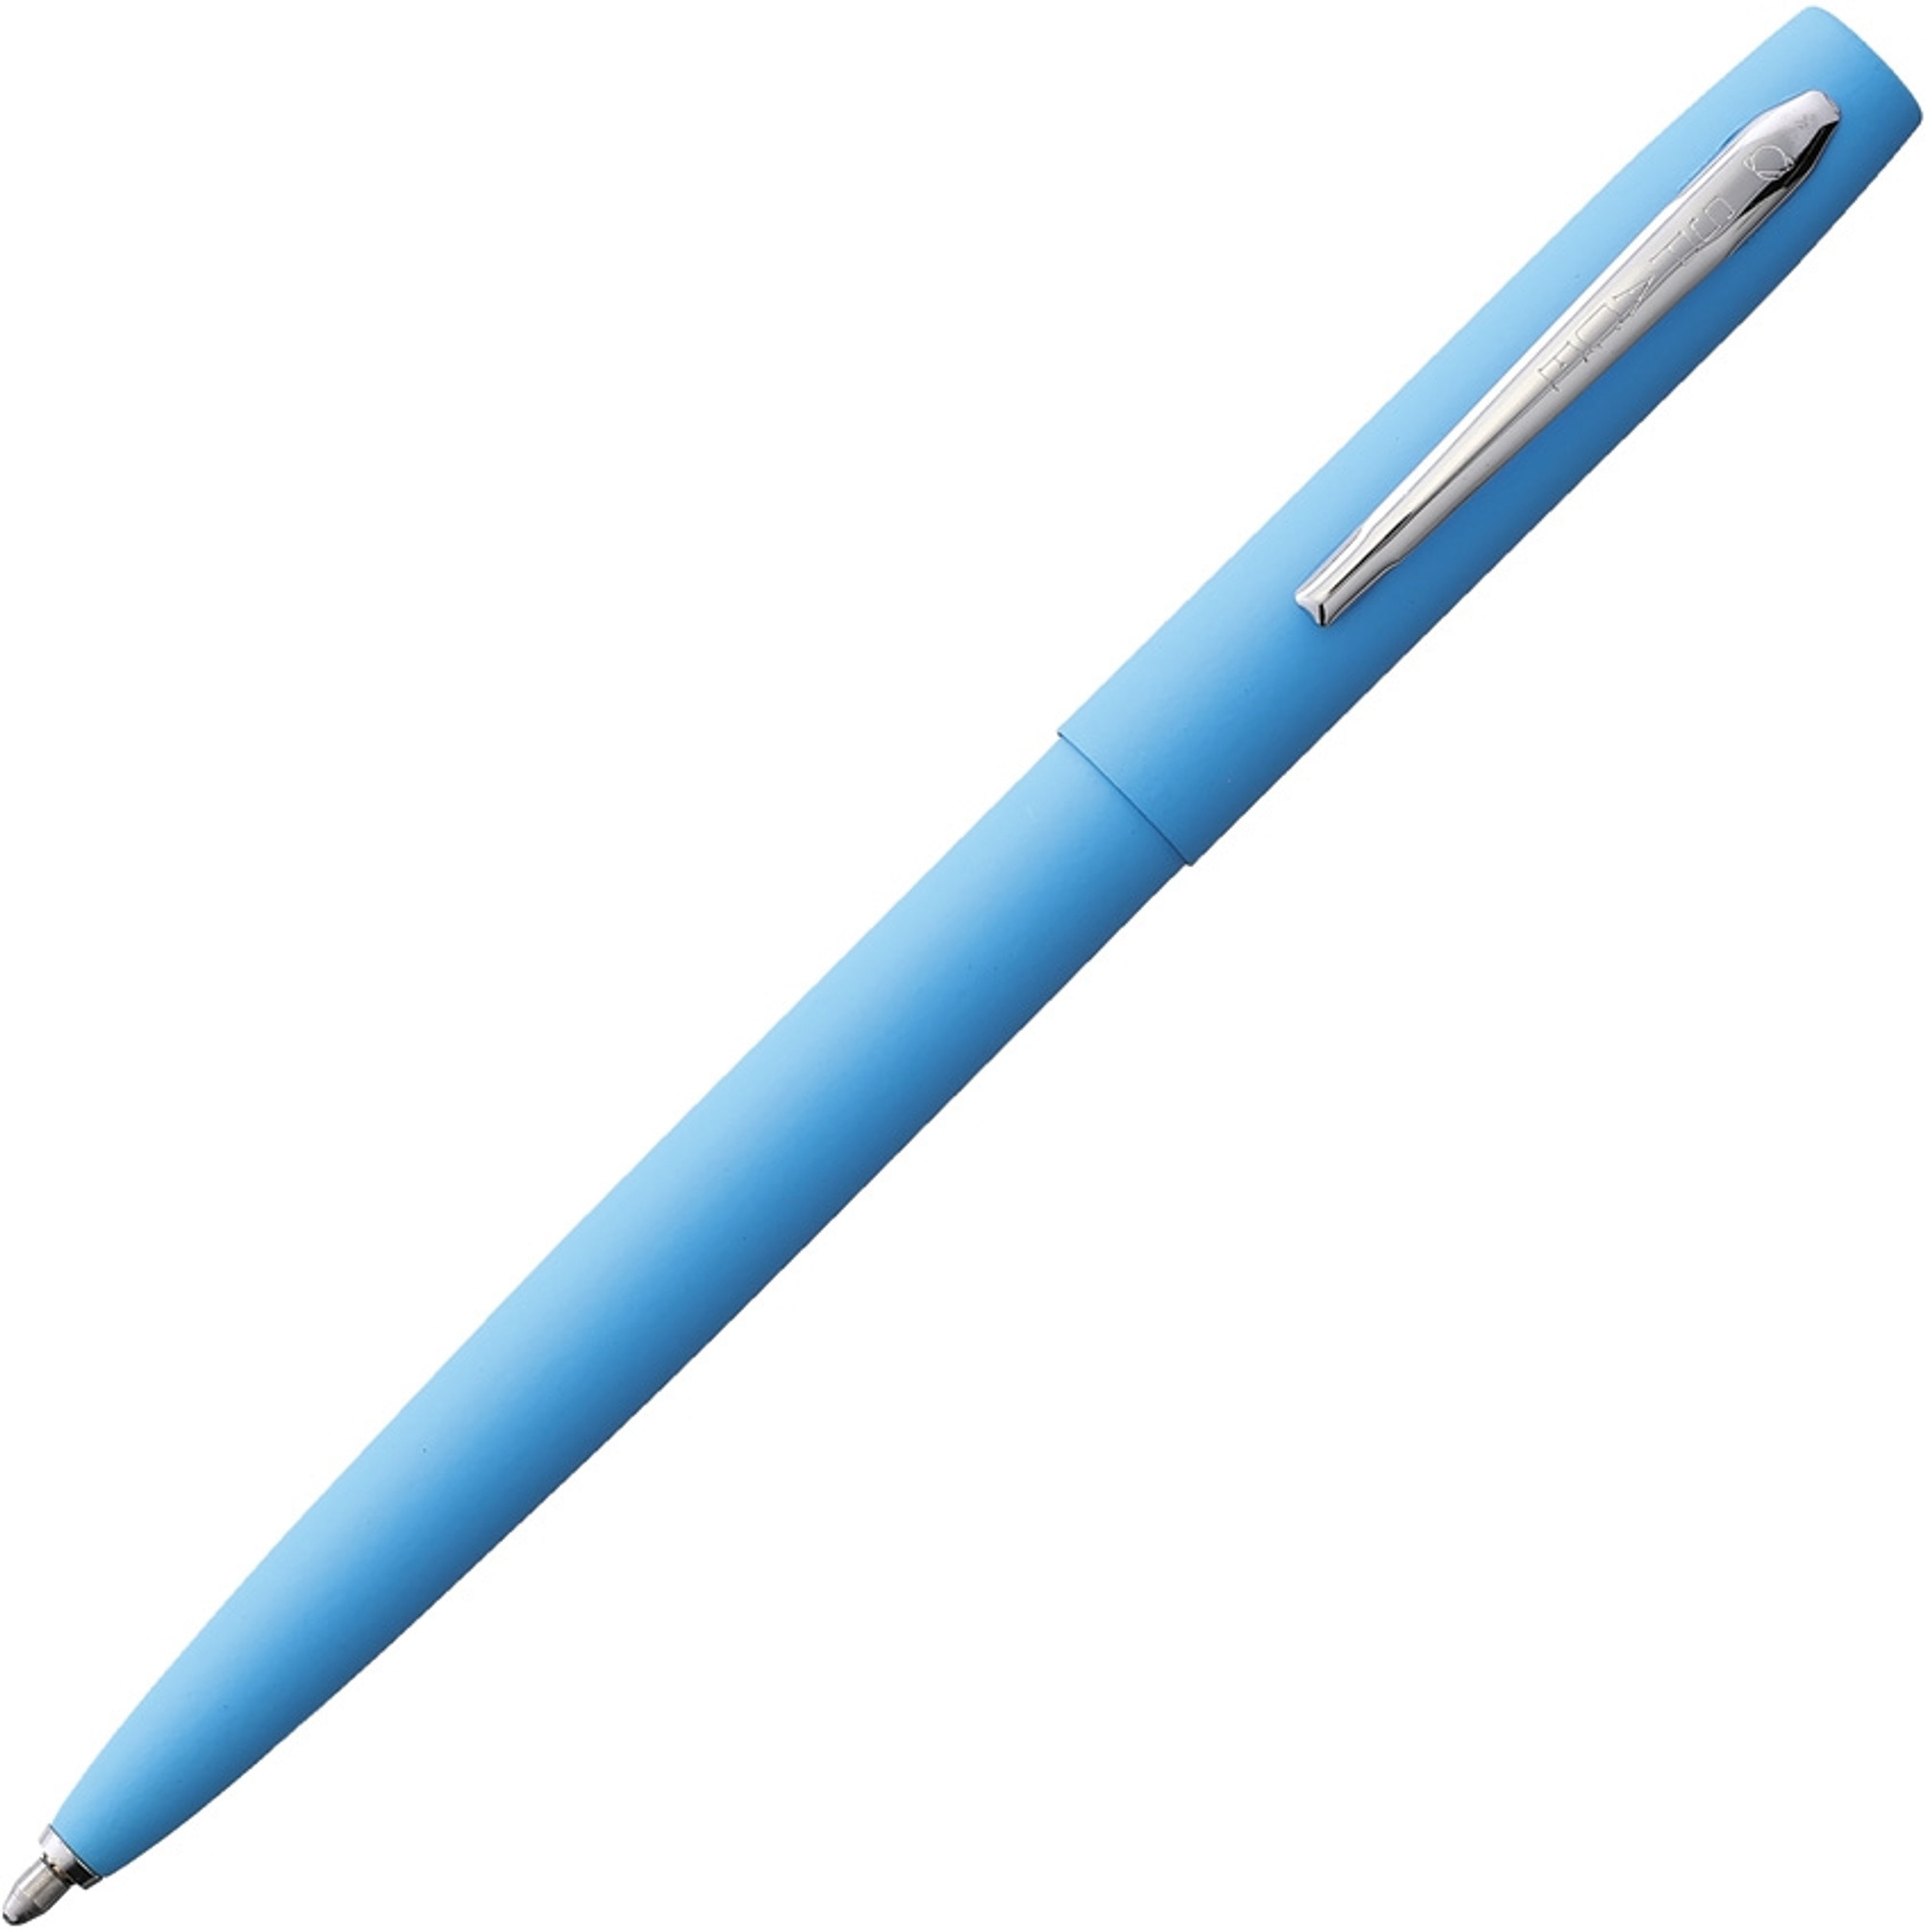 Cap and Barrel Space Pen Blue